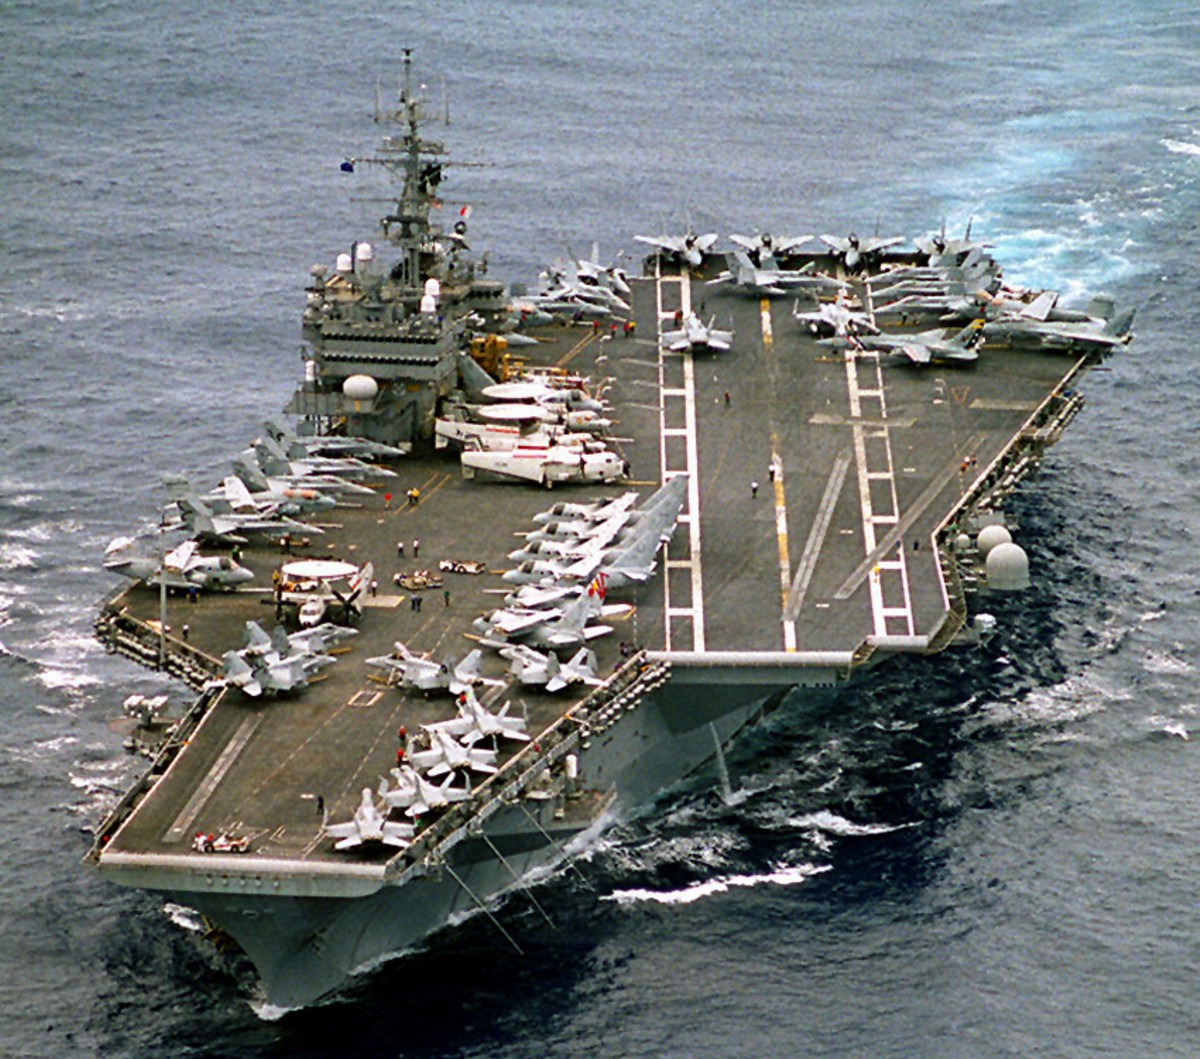 cv-64 uss constellation kitty hawk class aircraft carrier air wing cvw-2 us navy 1997 119